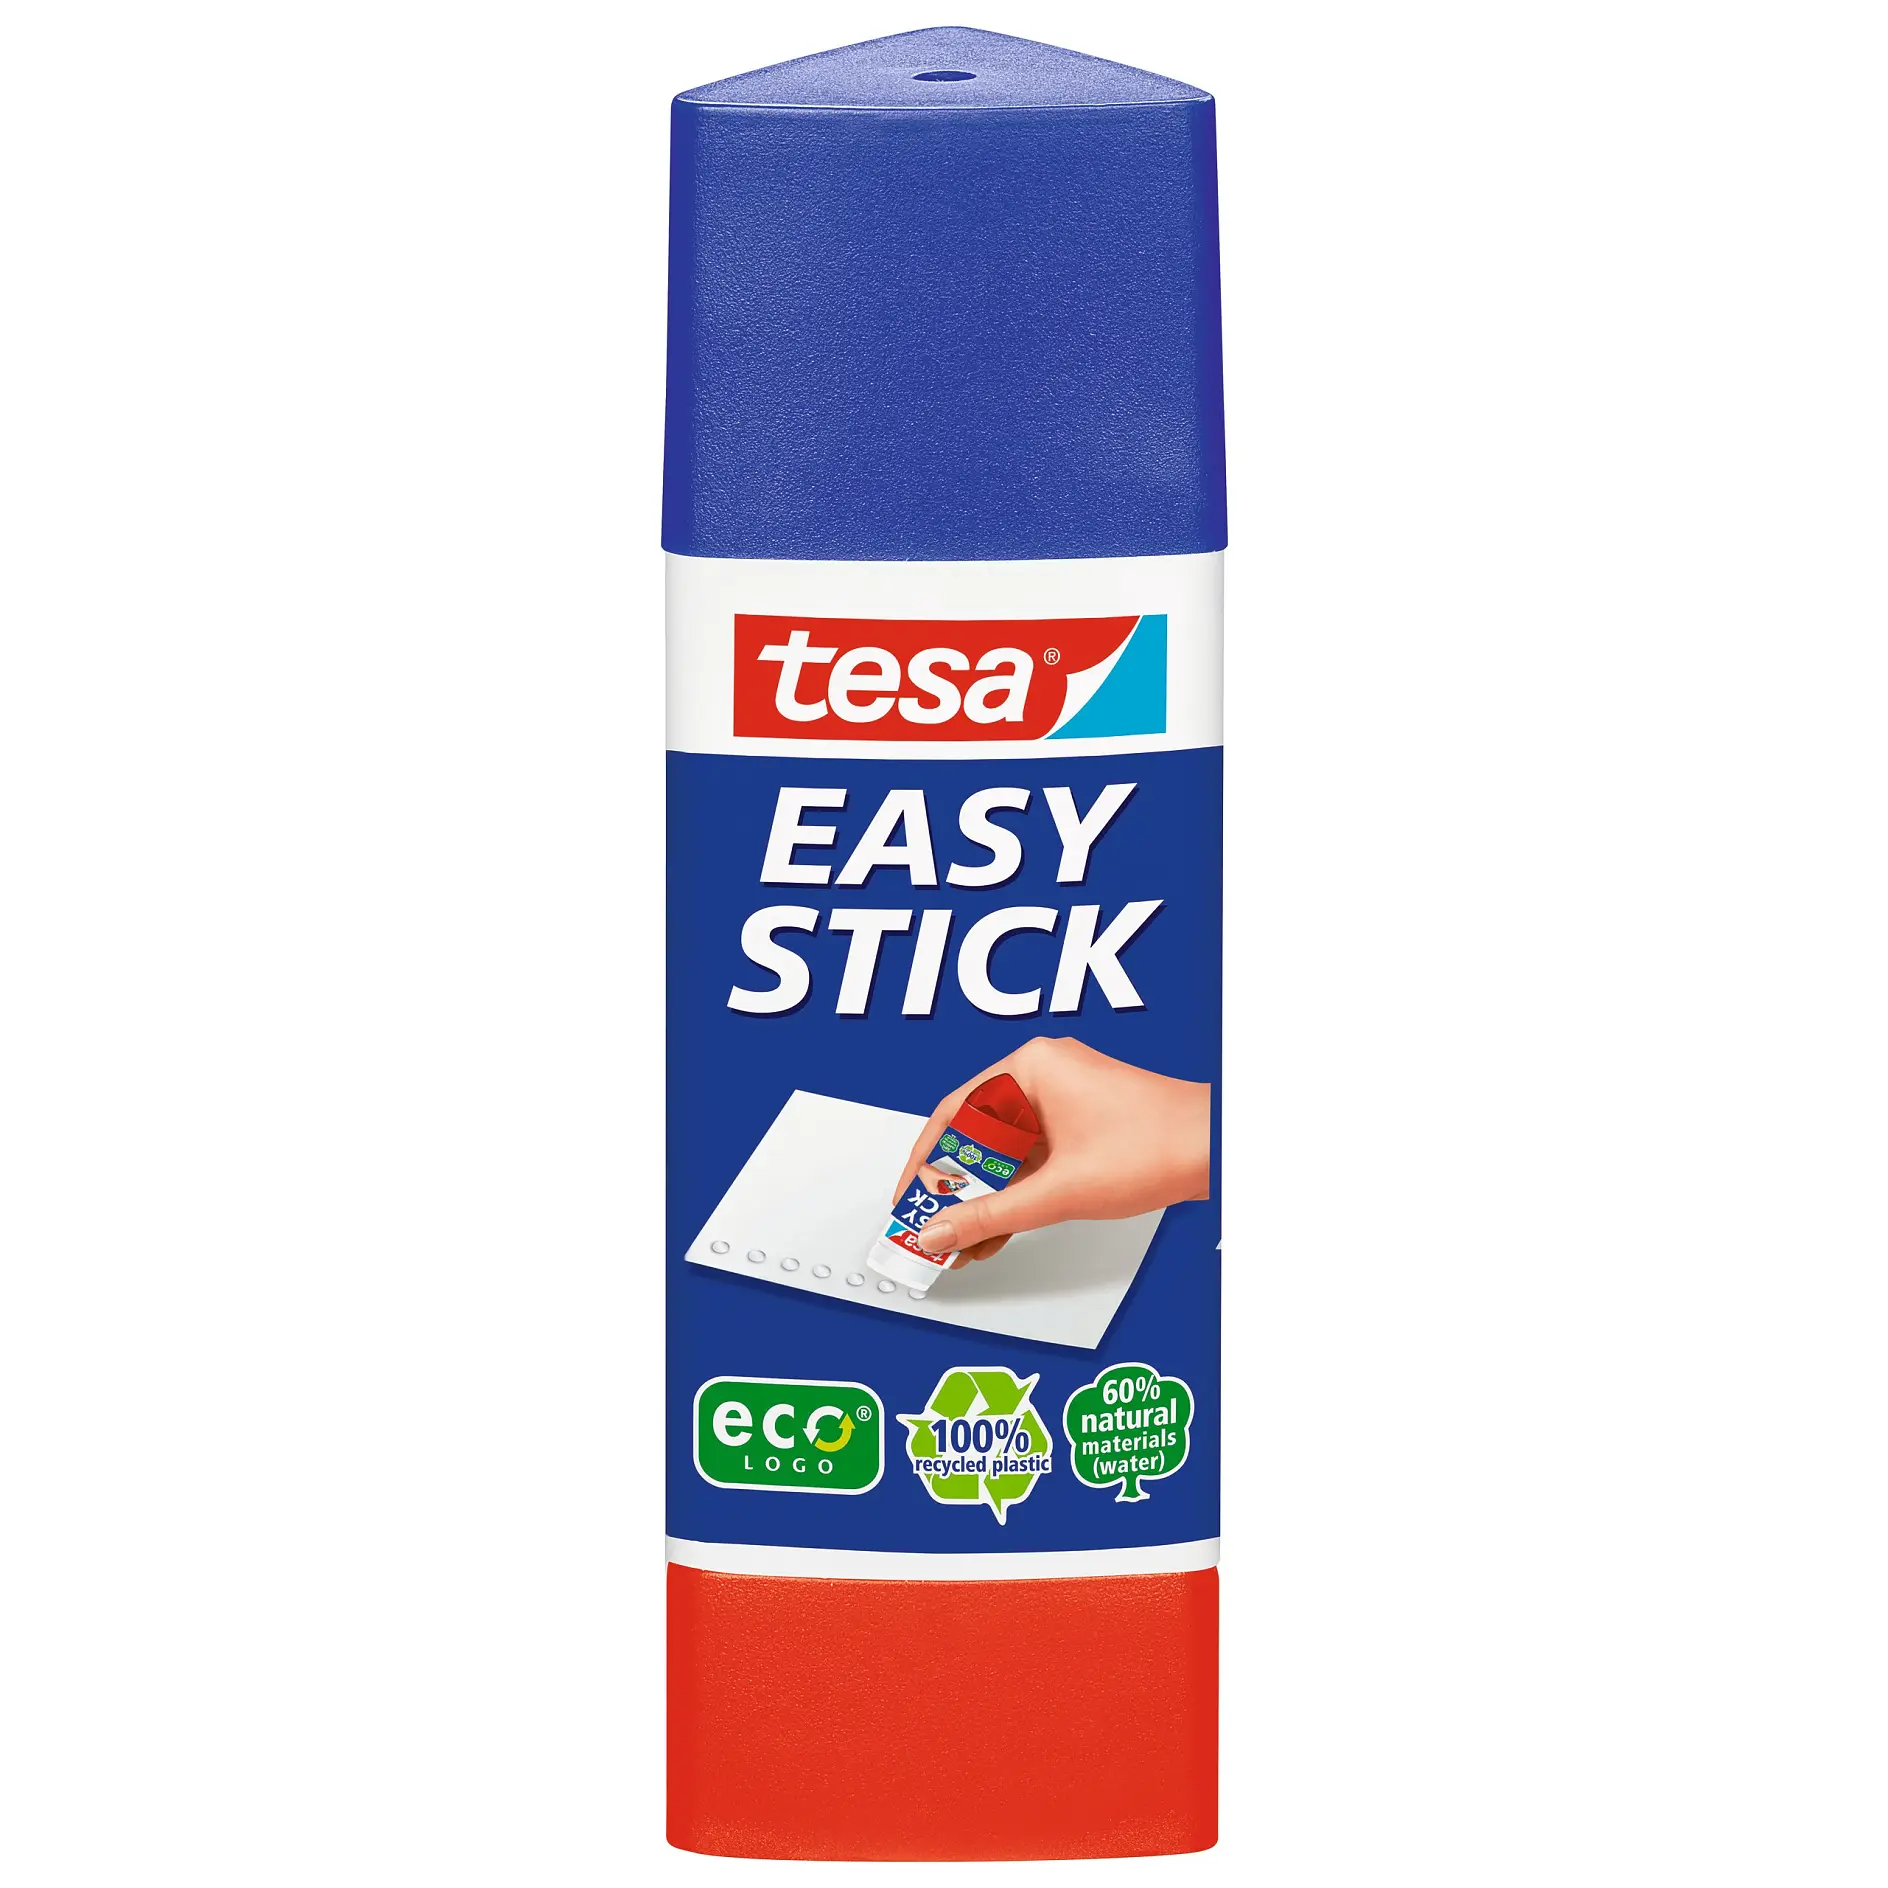 [en-en] tesa Easy stick 25g